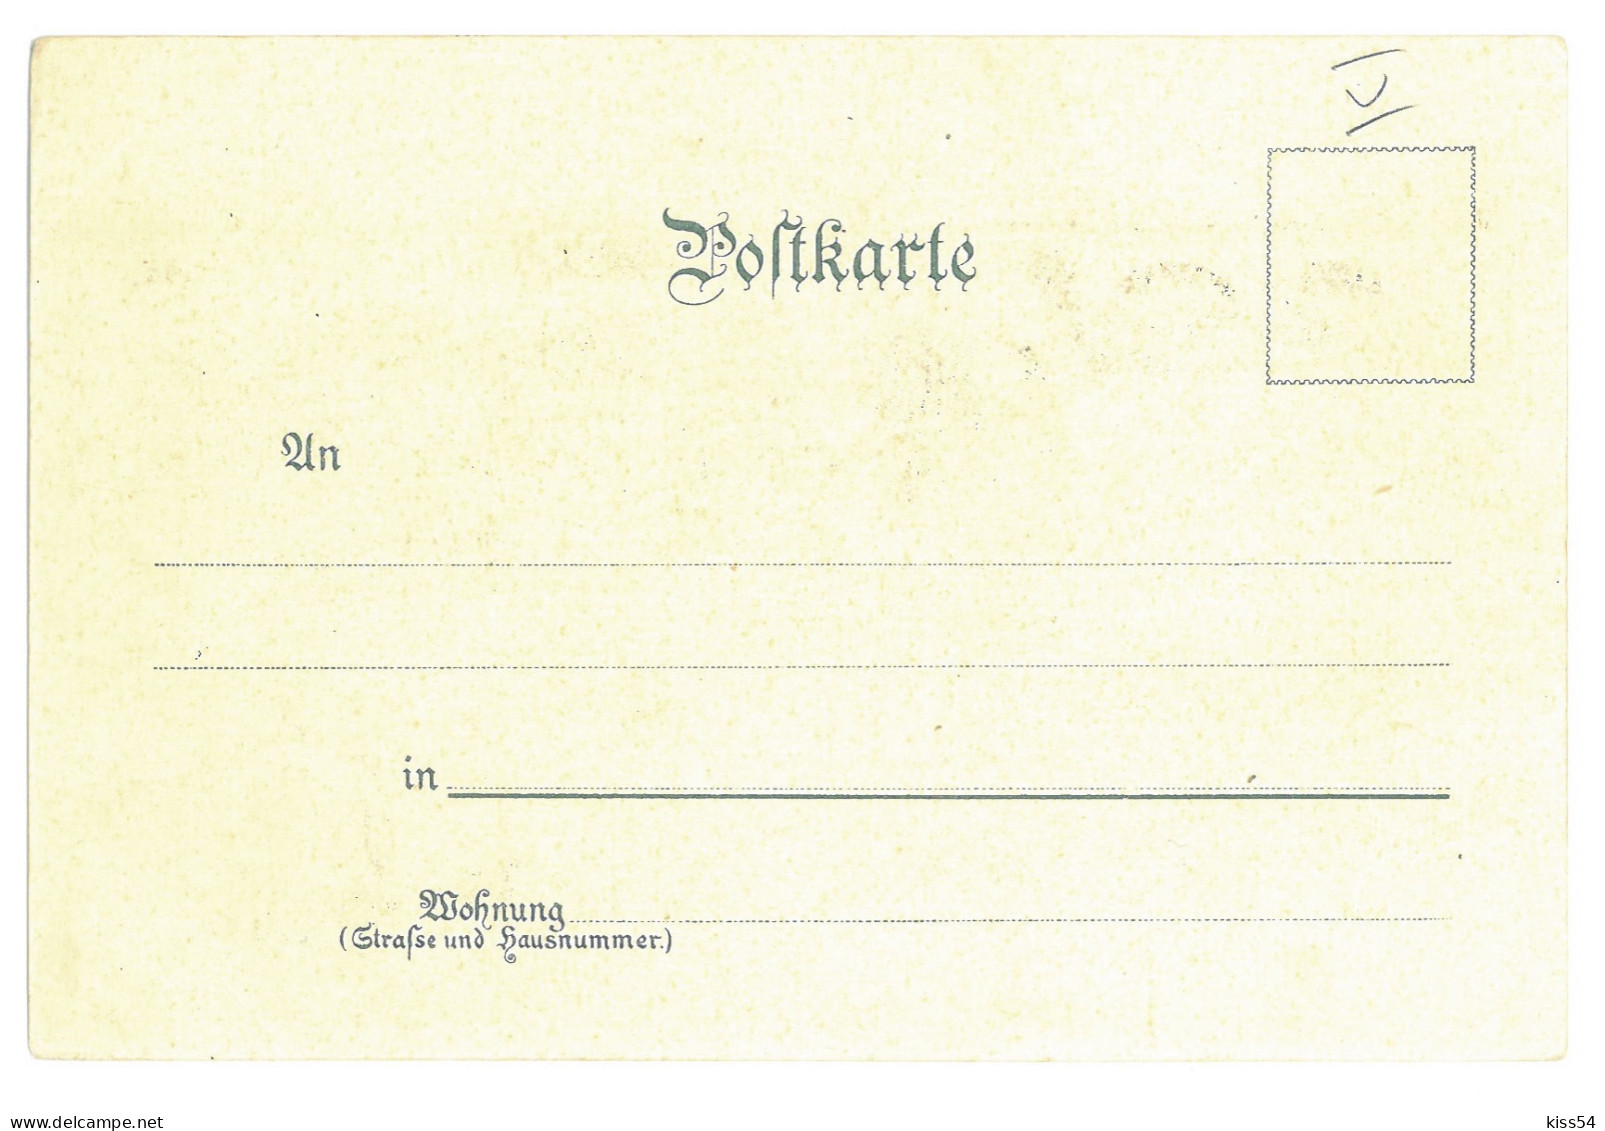 GER 20 - 16924 HAMBURG, Litho, Germany - Old Postcard - Unused - Harburg